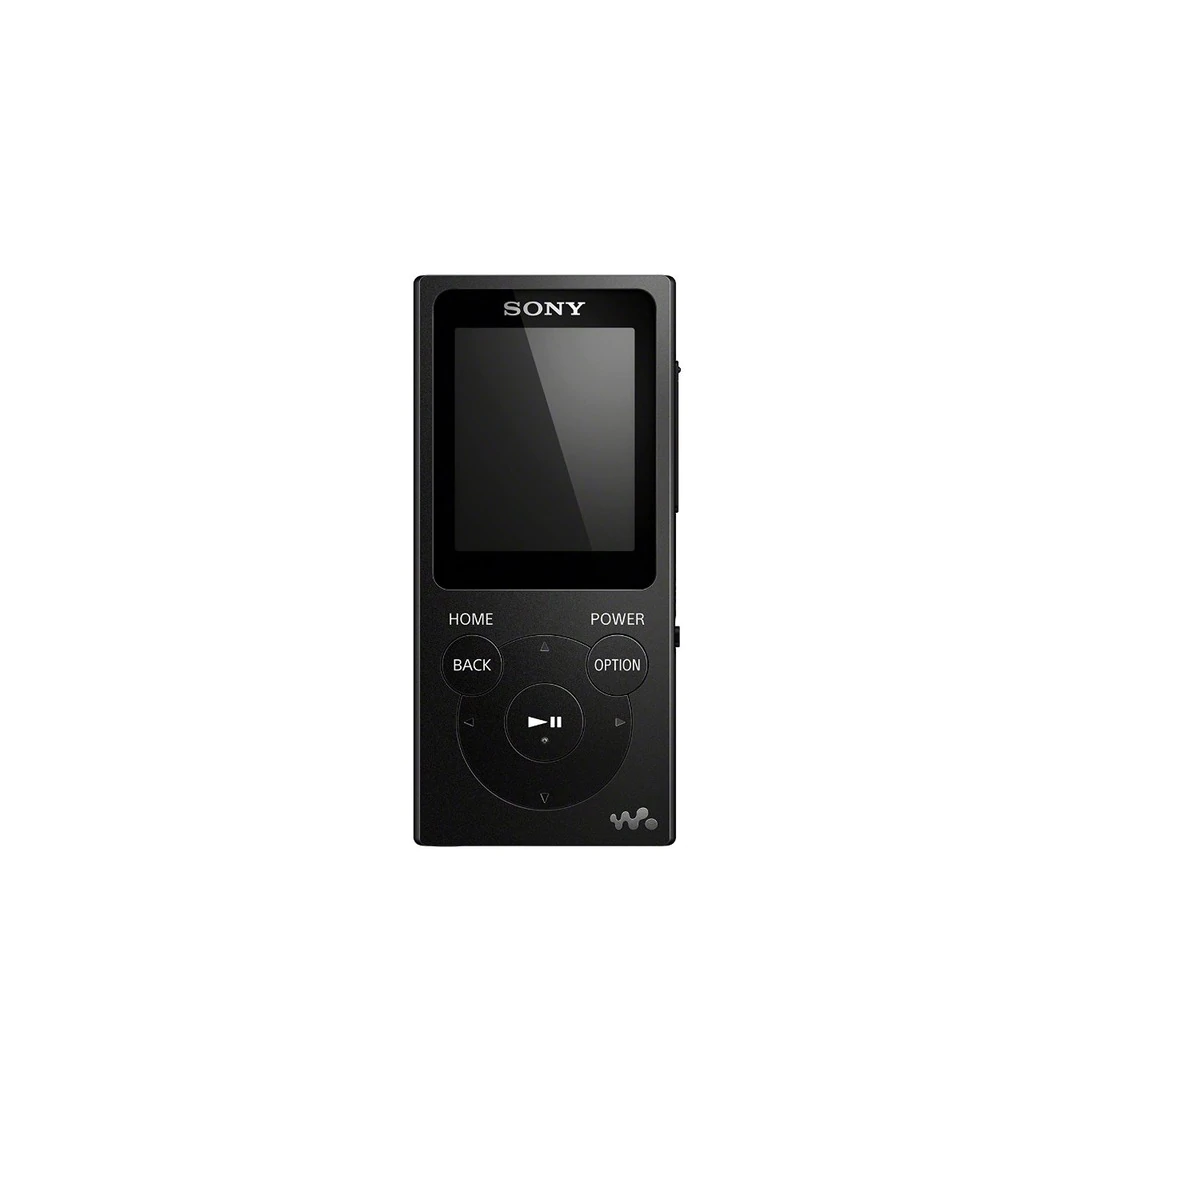 Reproductor MP4 Sony NW-E393 Negro de 4 GB con radio FM